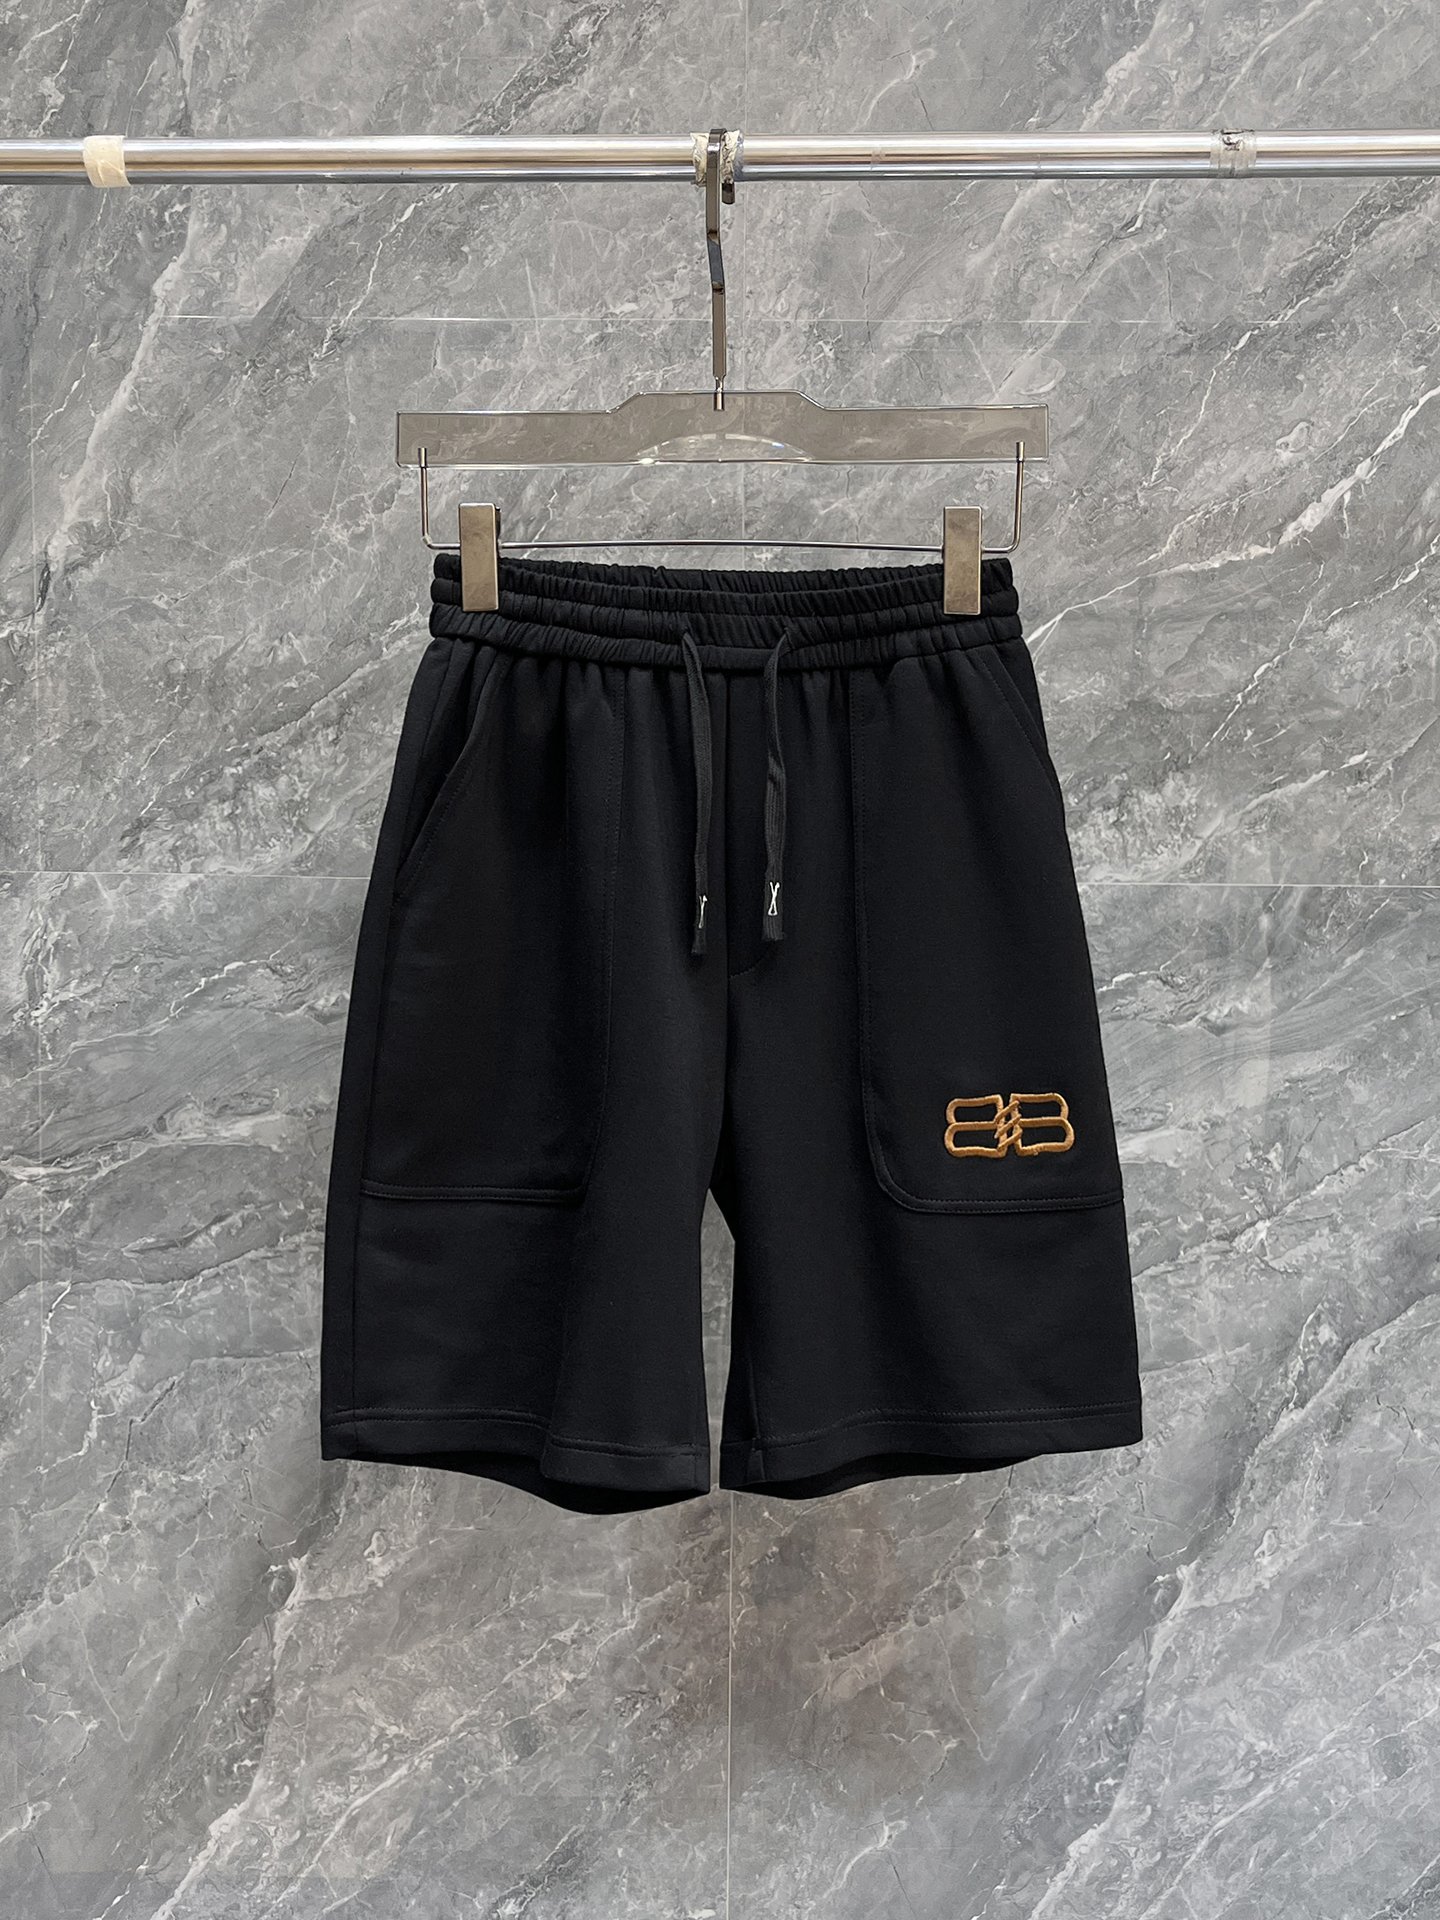 Buy Top High quality Replica
 Balenciaga Clothing Shorts Men Summer Collection Casual